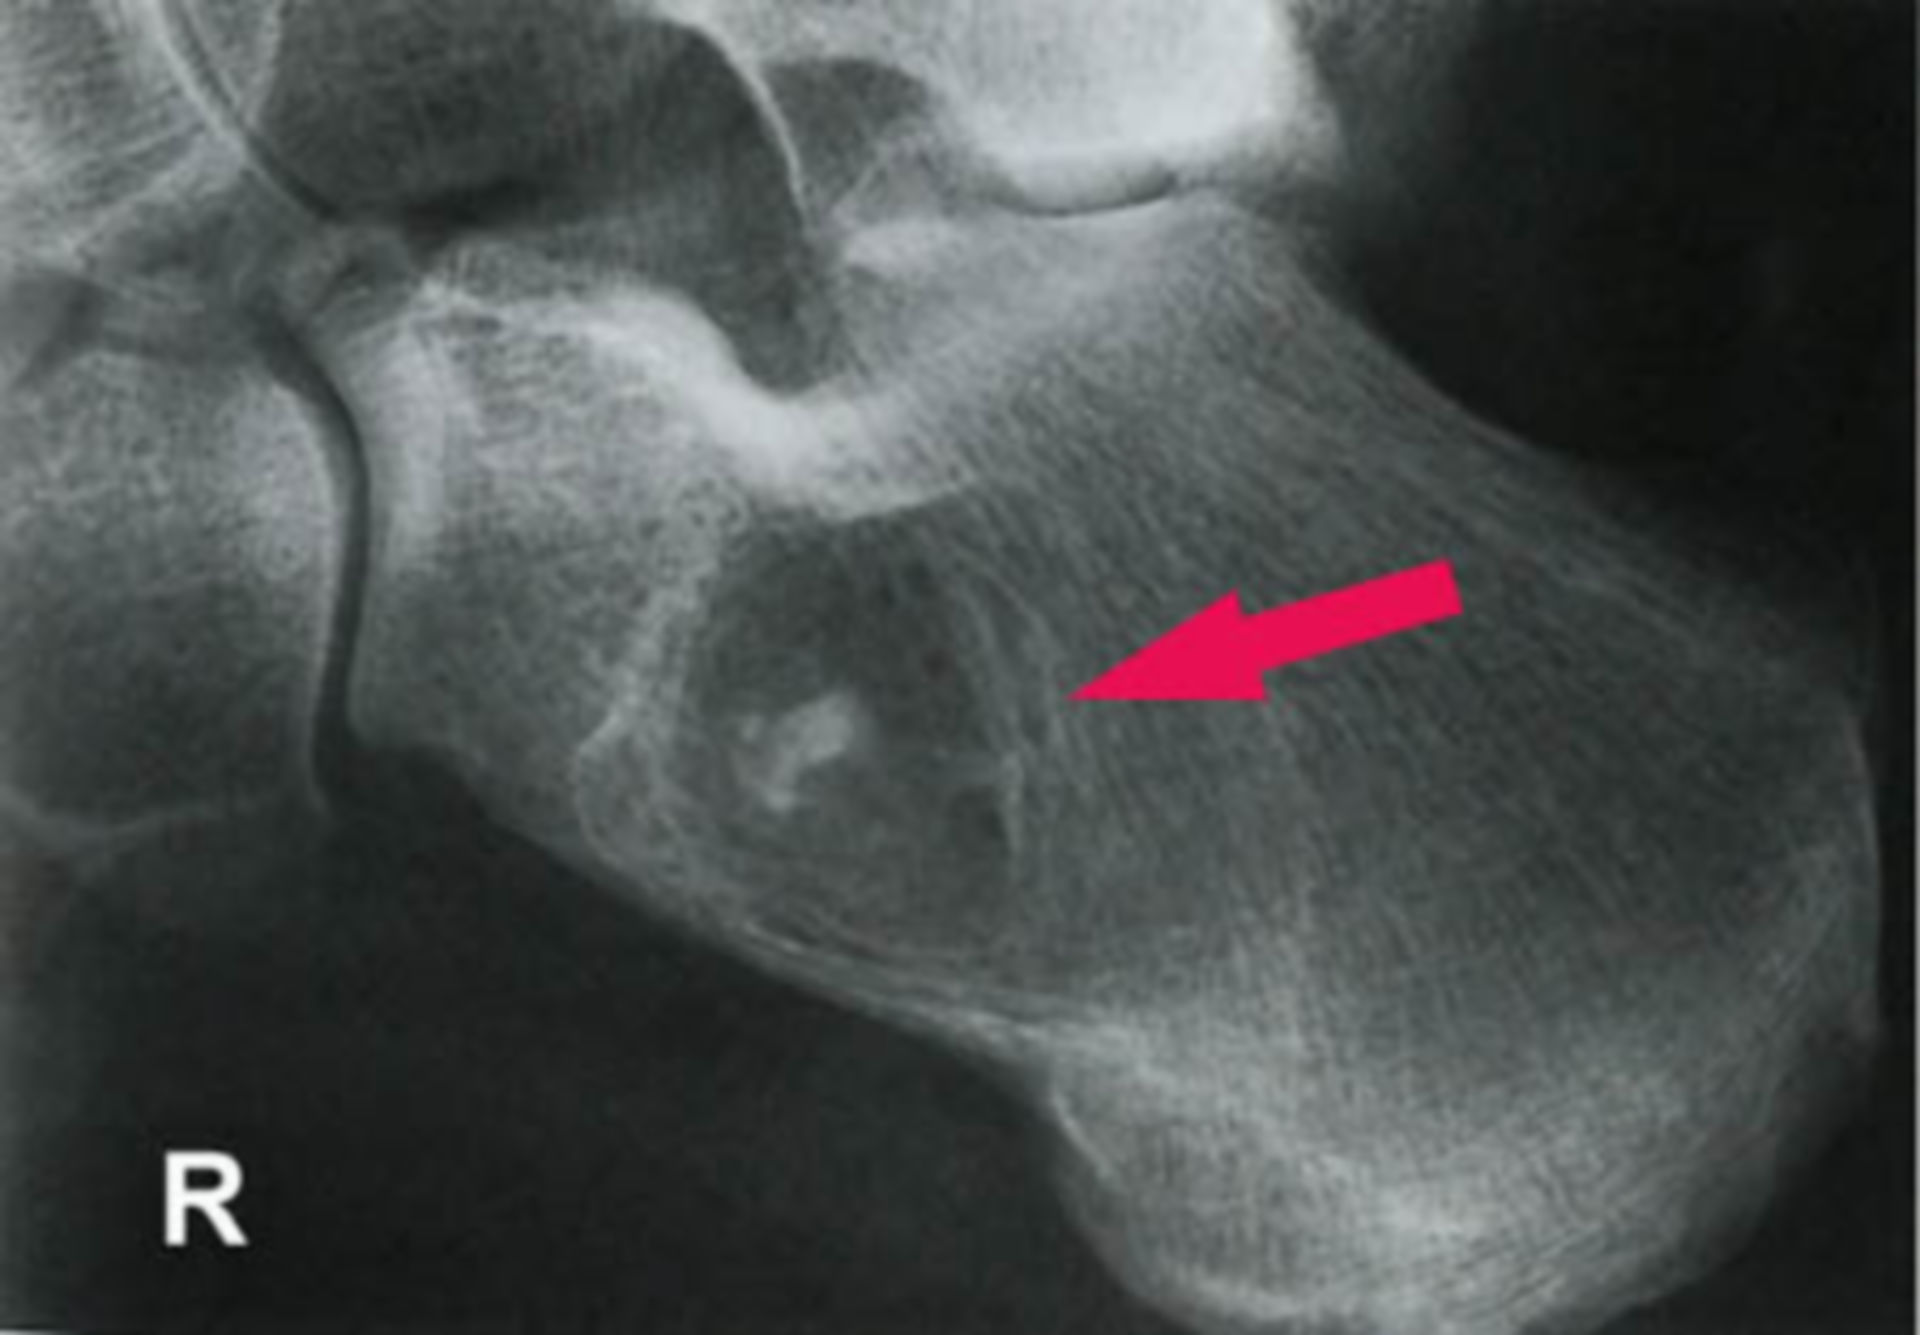 X-ray: calcaneus